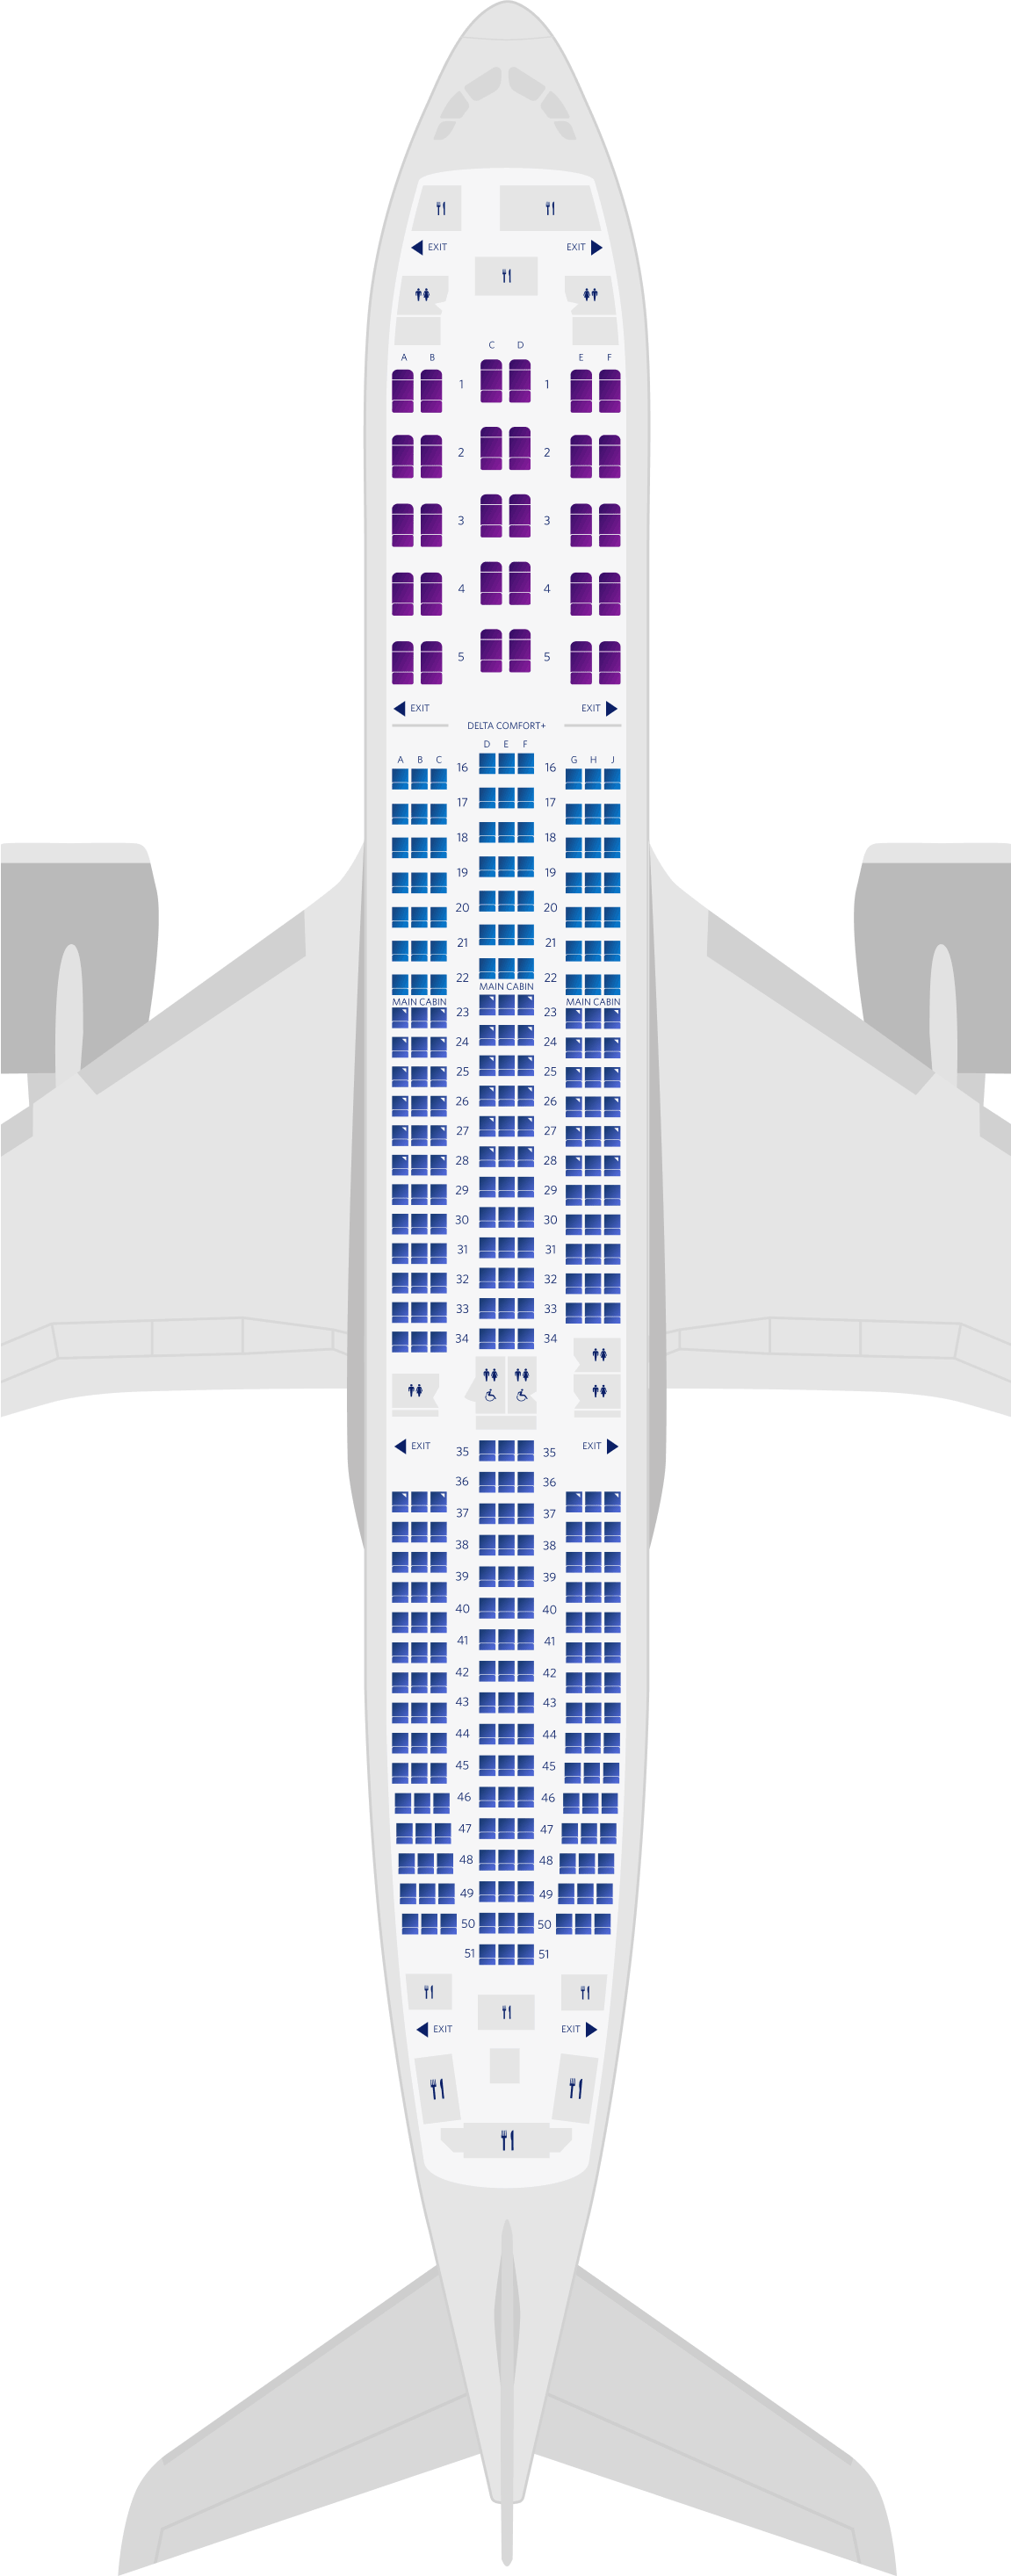 Mapa de assentos do Airbus A350-900 com 3 cabines